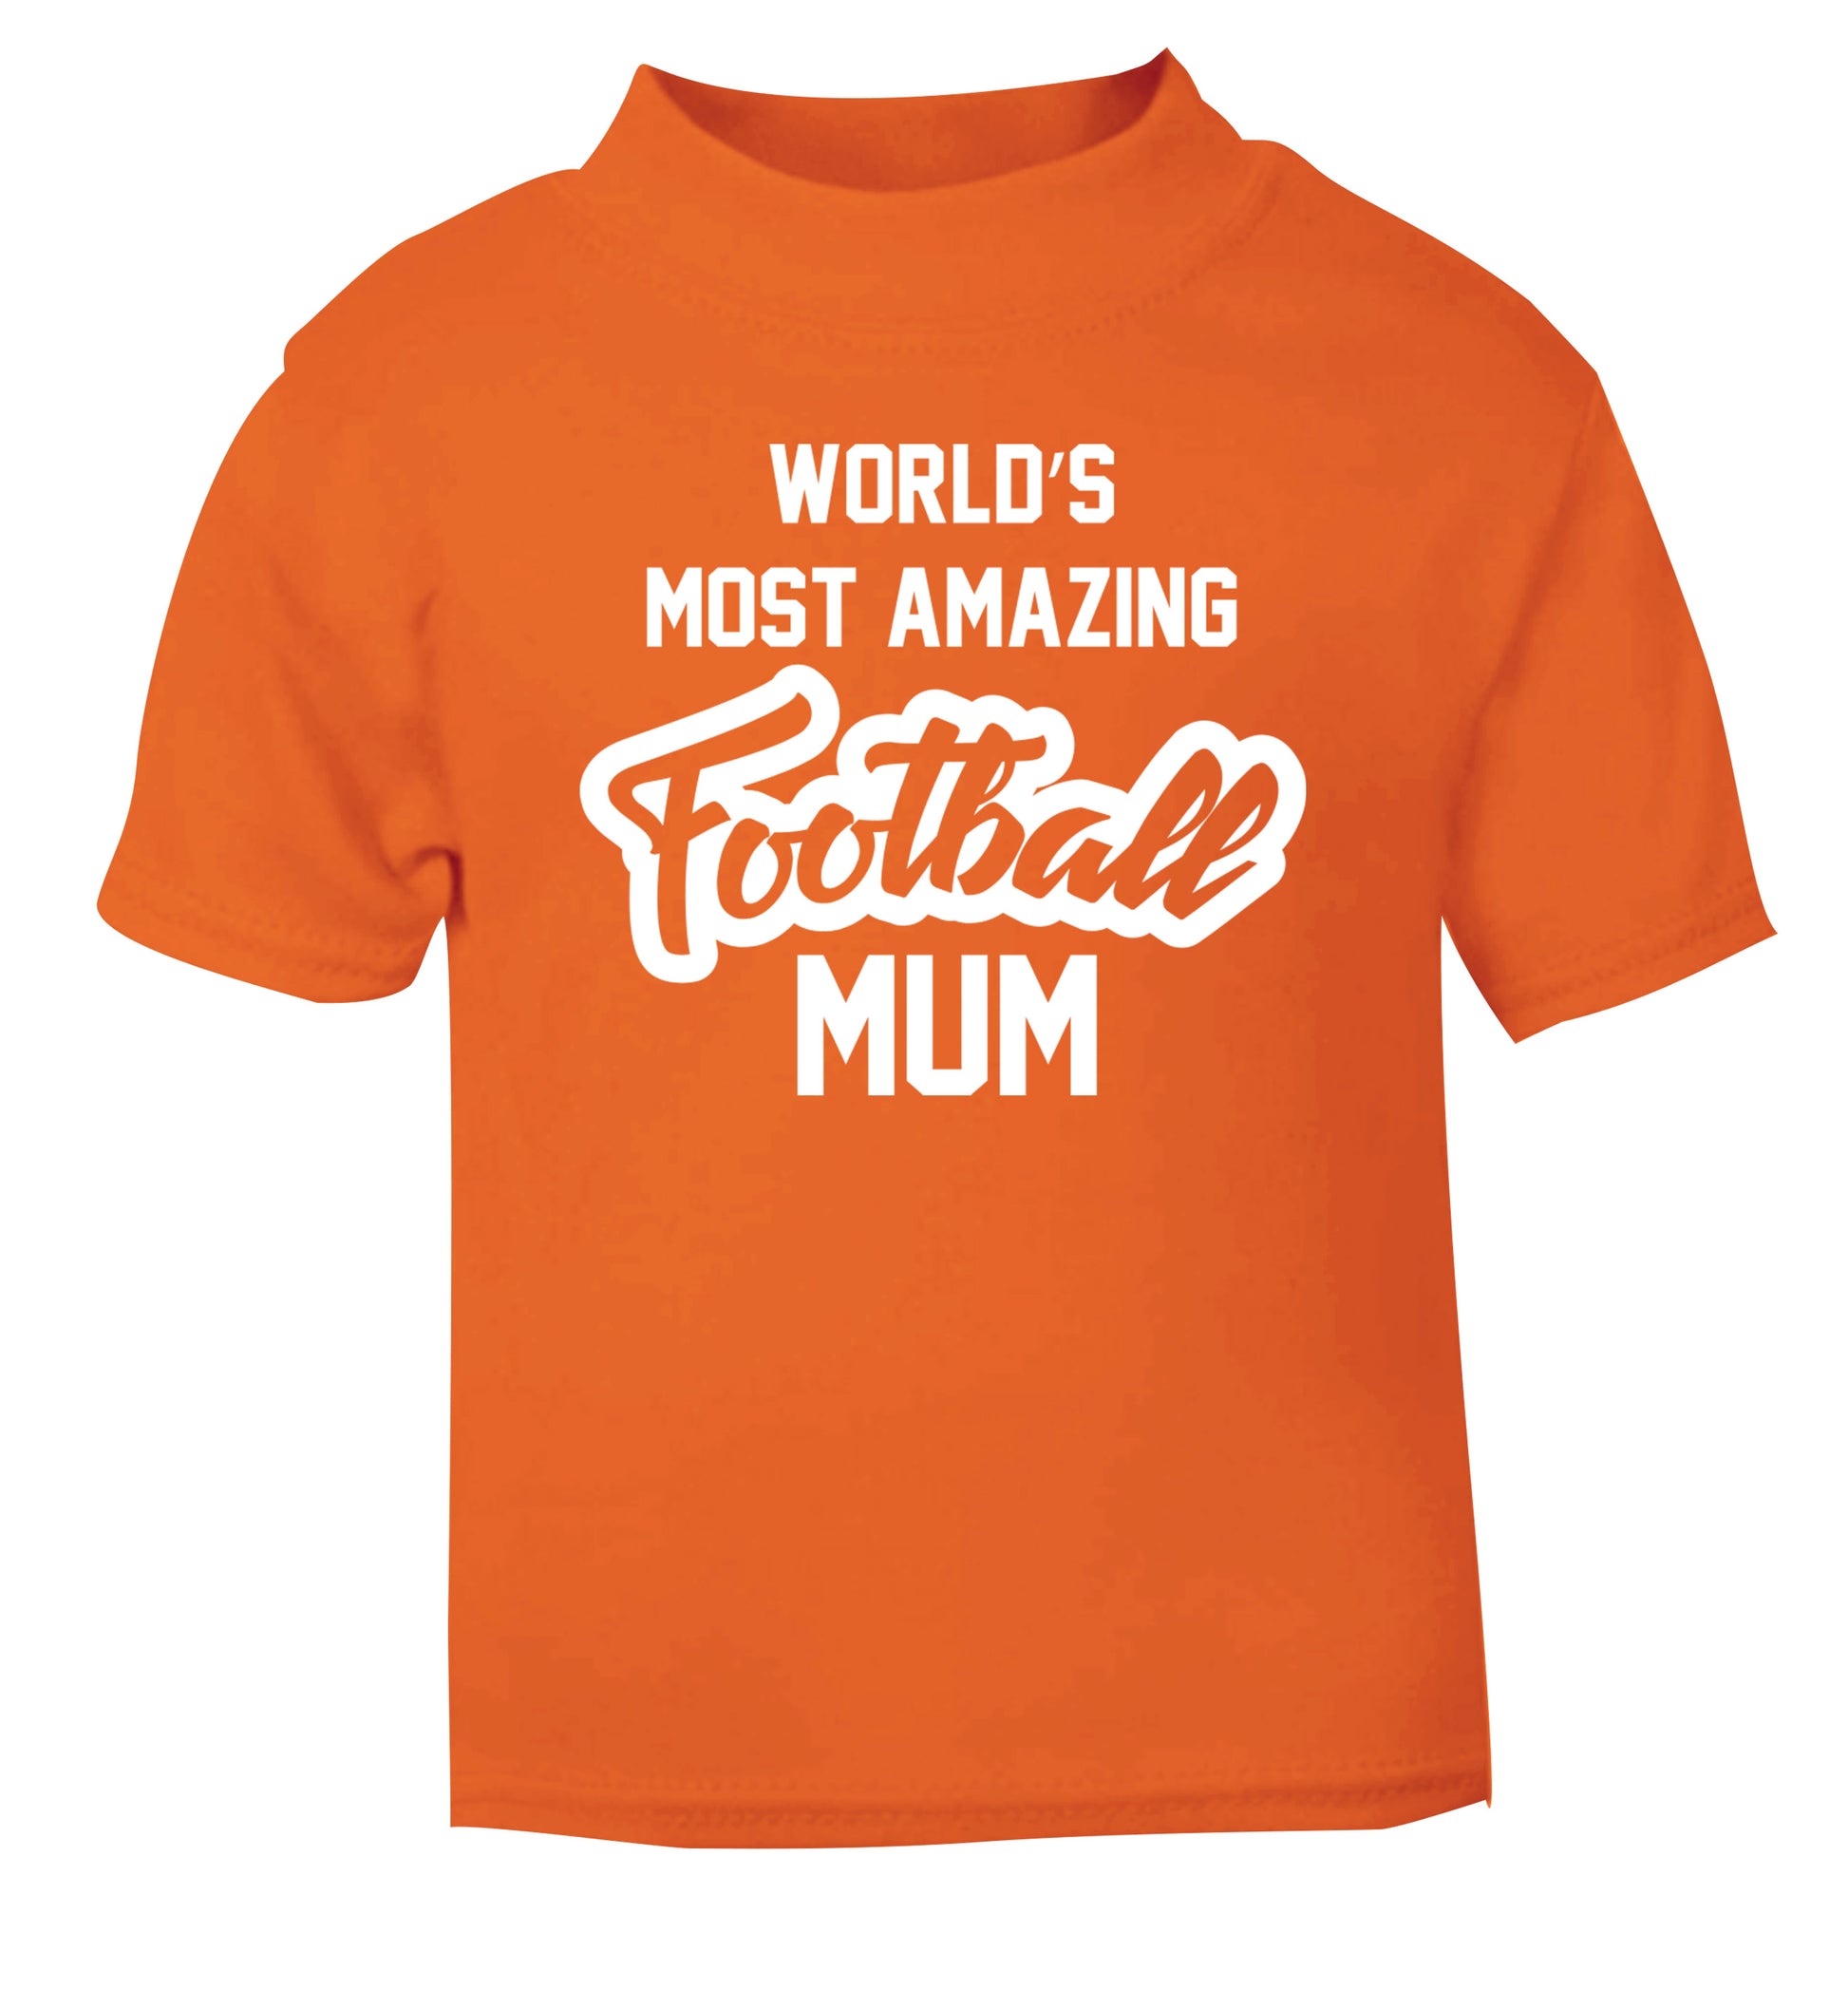 Worlds most amazing football mum orange Baby Toddler Tshirt 2 Years